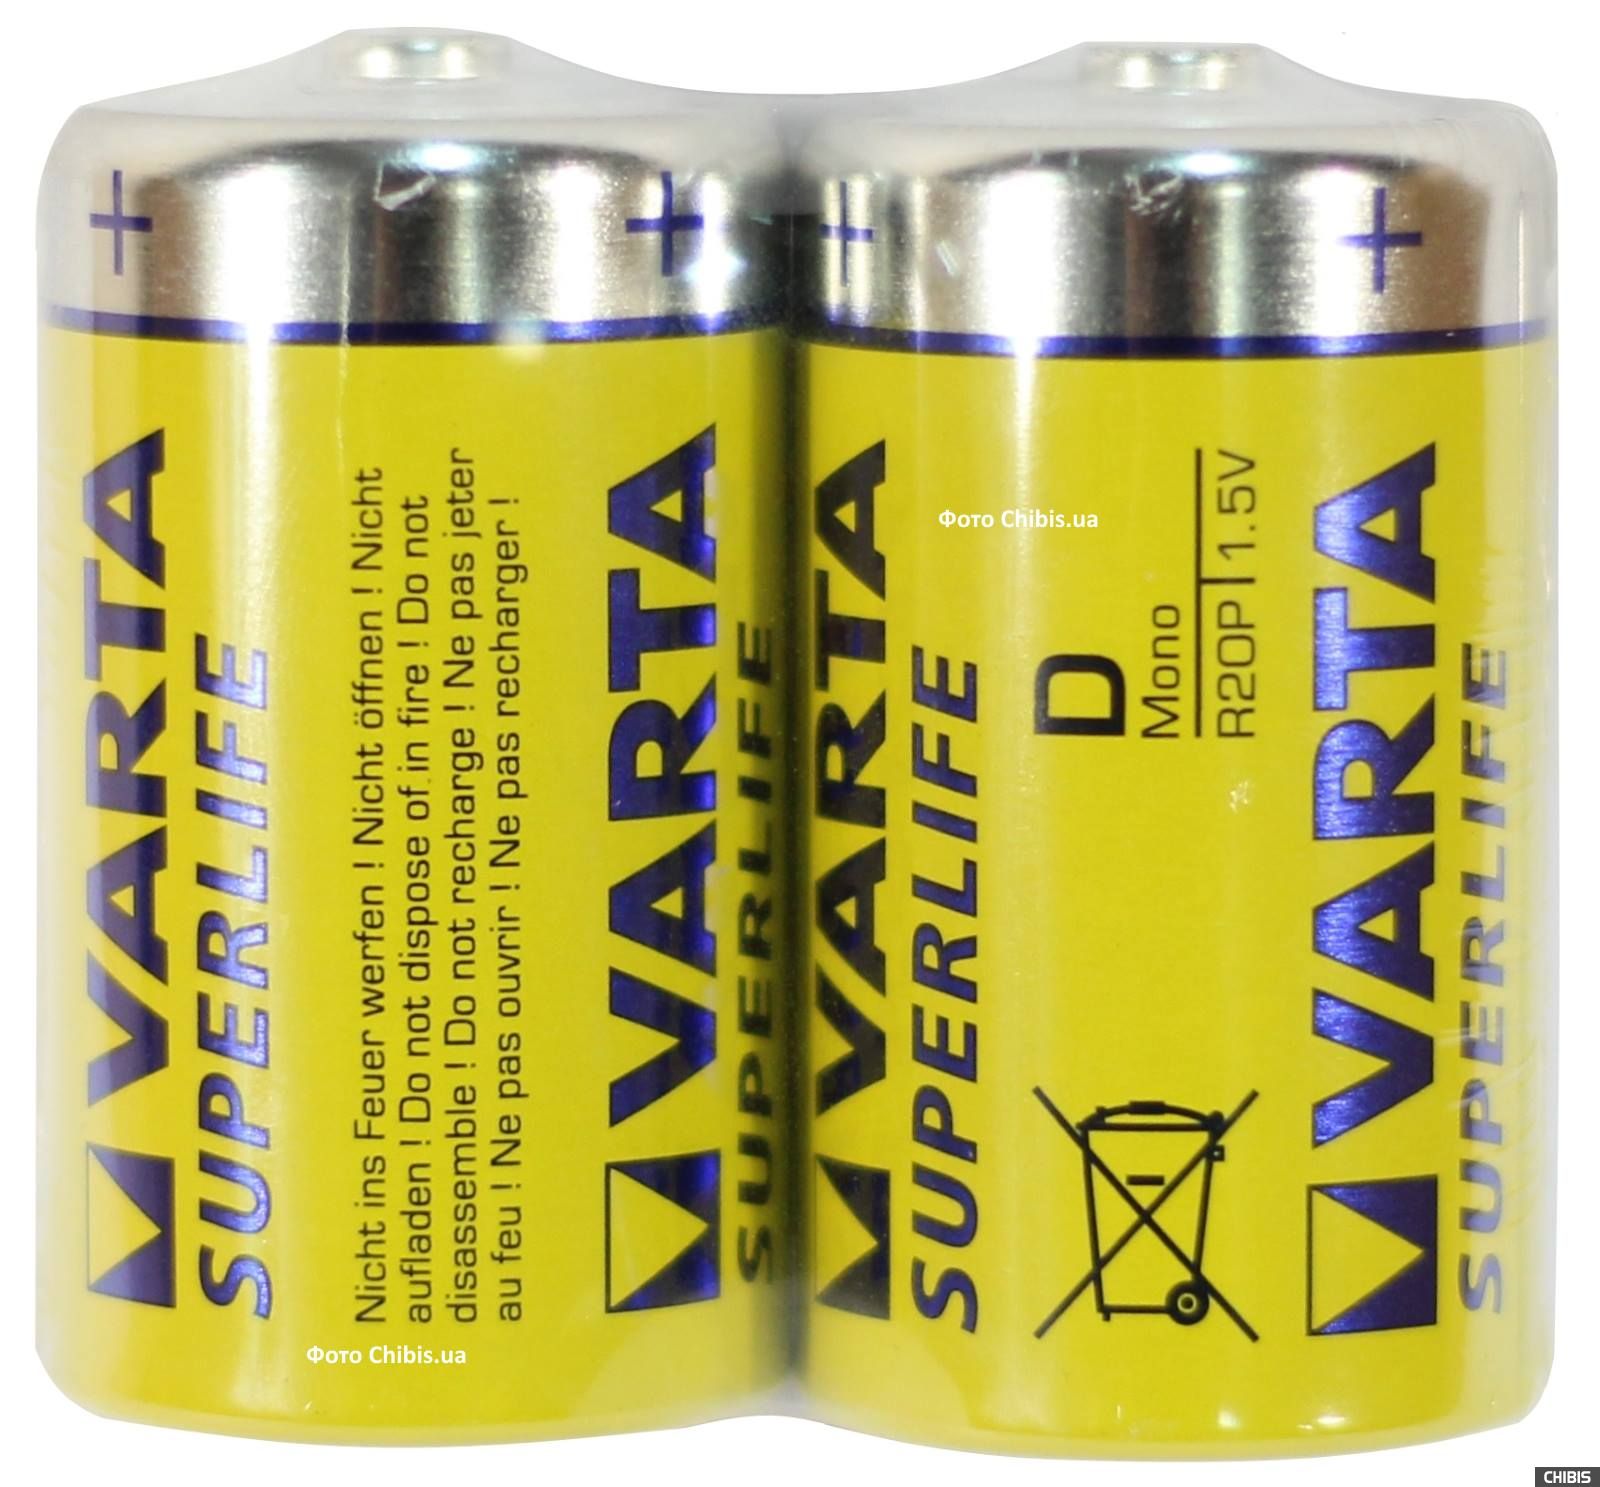 Батарейка R20 Varta Superlife 2шт bl - купить в Киеве по низкой цене |  Chibis.ua